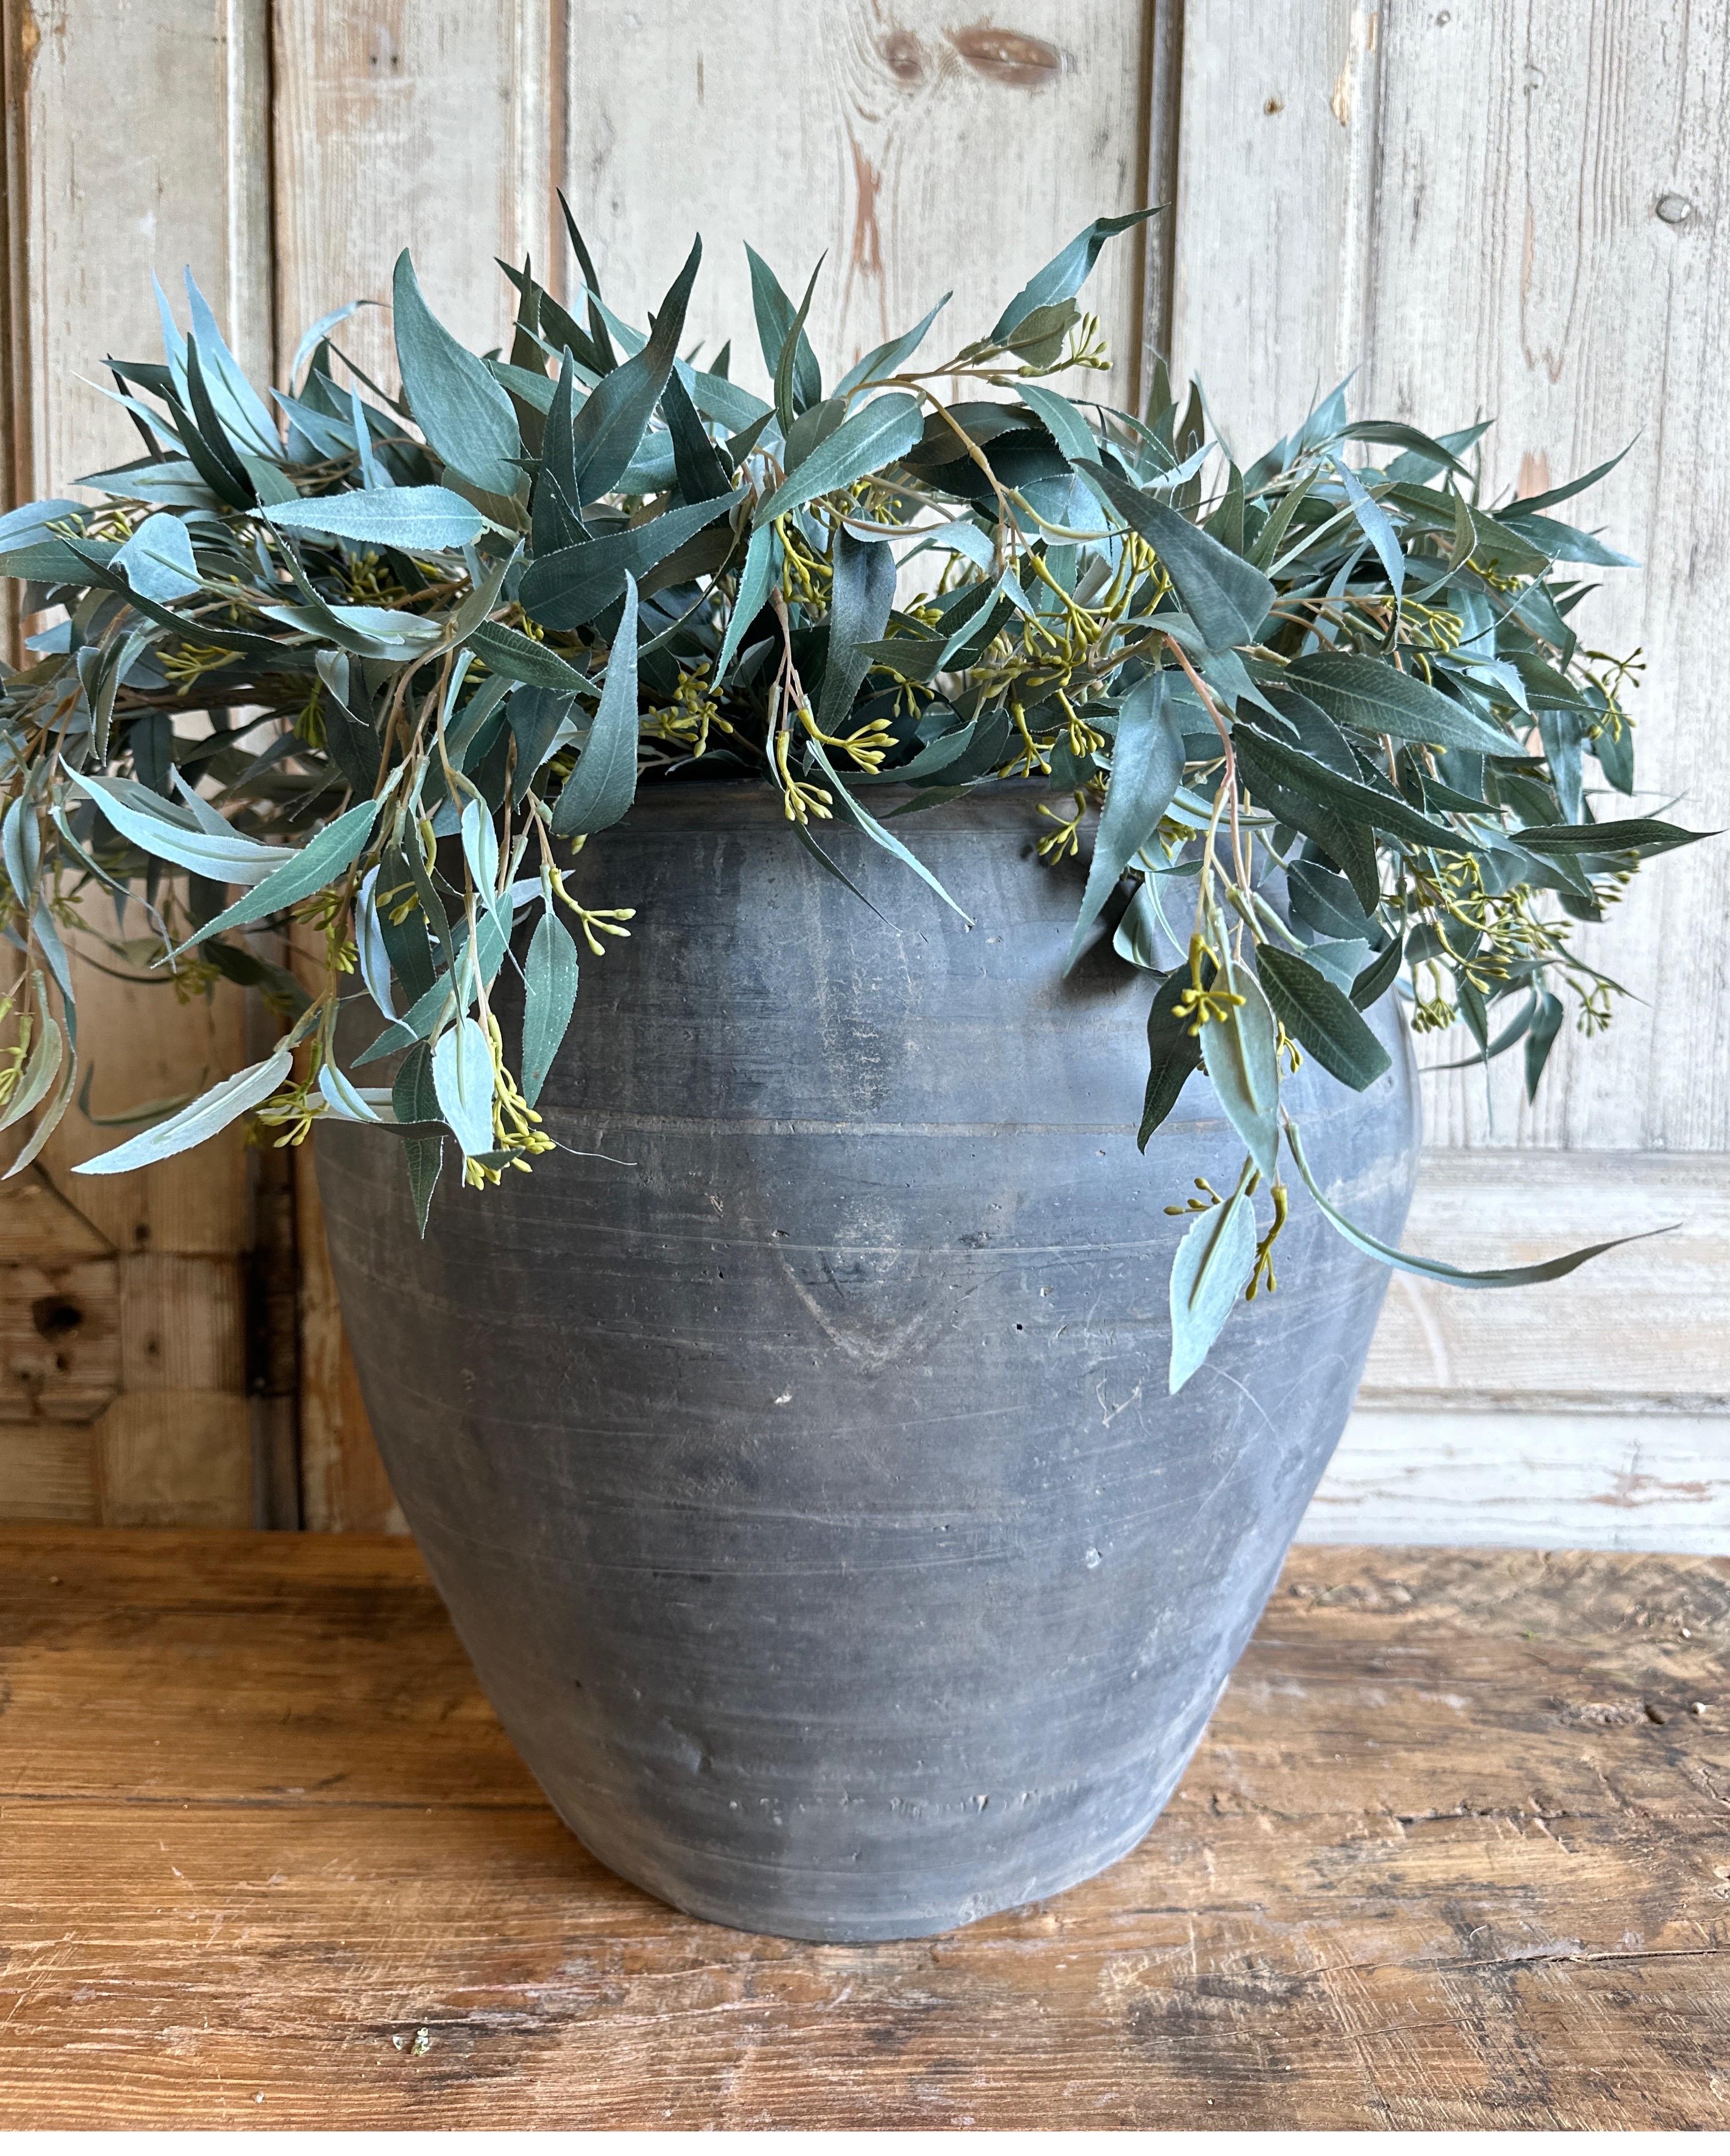 Le pot Grey Croix est un pot en terre cuite vintage qui est magnifiquement coloré et authentiquement usé. La surface du pot et de l'anse s'écaille par endroits, laissant apparaître l'argile d'origine. Ces qualités confèrent au pot un aspect vieilli